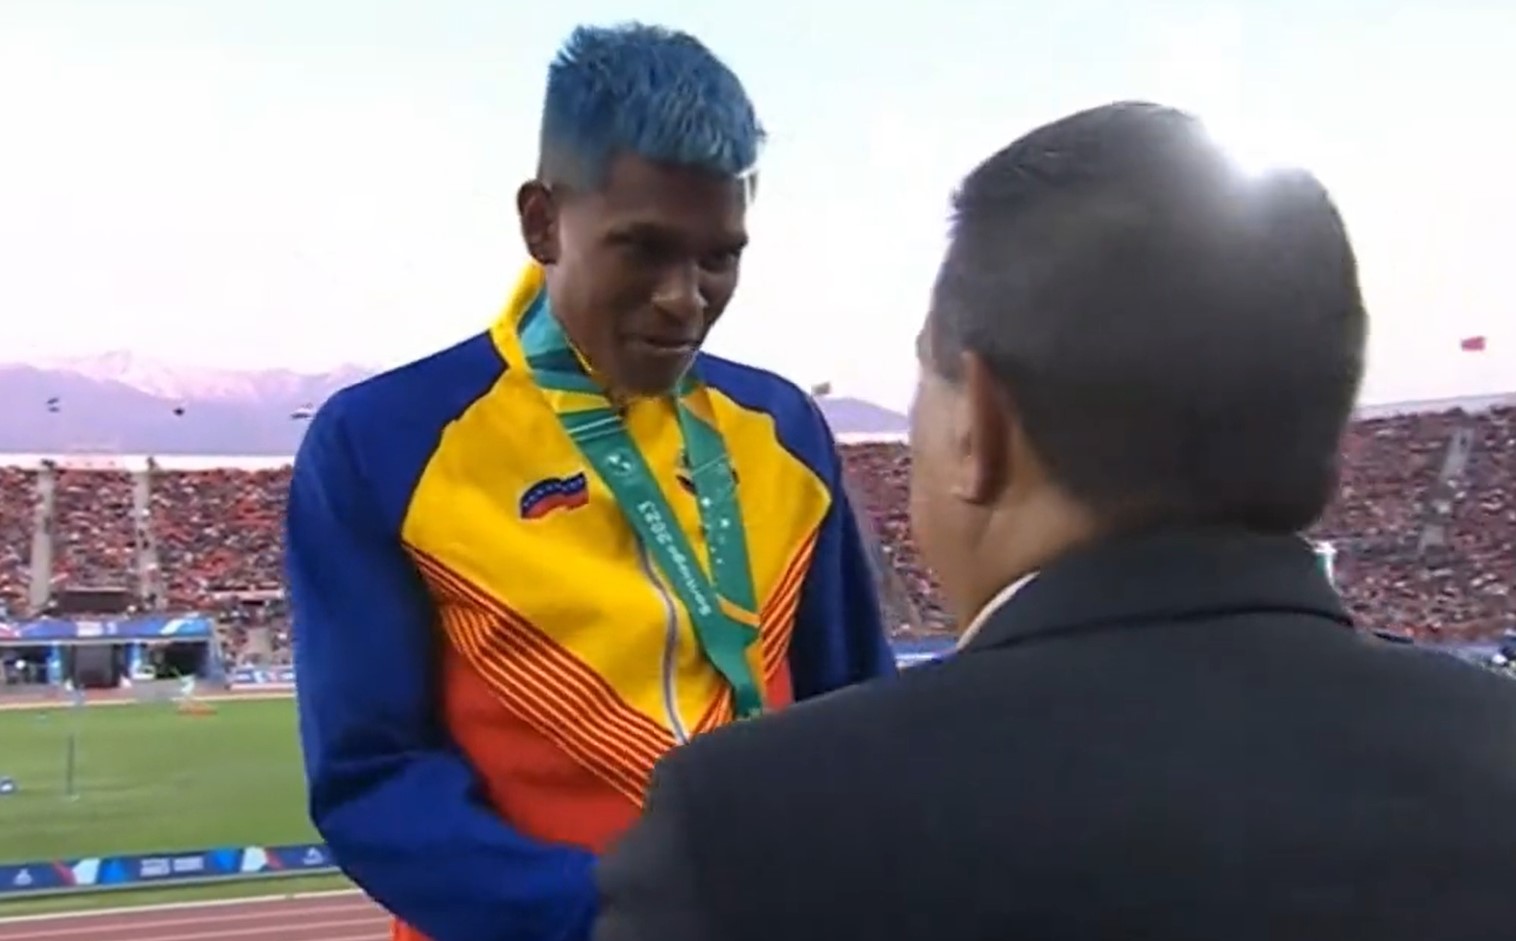 Campeón José Maita enfrenta a dirigente de la Federación Venezolana de Atletismo en pleno podio de premiación (VIDEO)